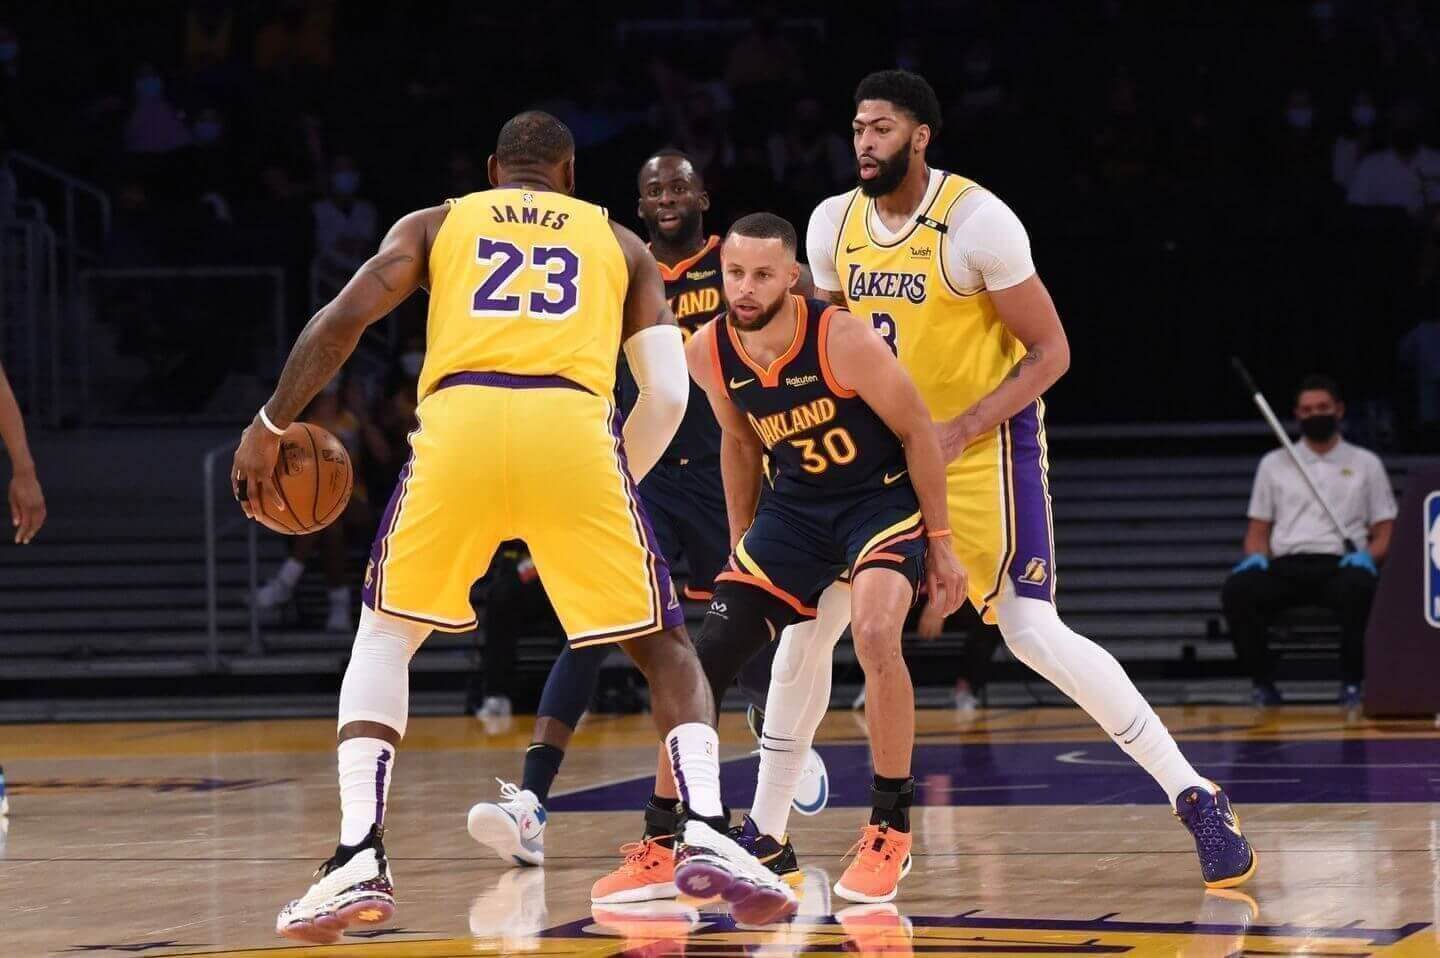 Trận Play-in giữa Lakers và Warriors nhận lượt theo dõi kỷ lục - Ảnh 2